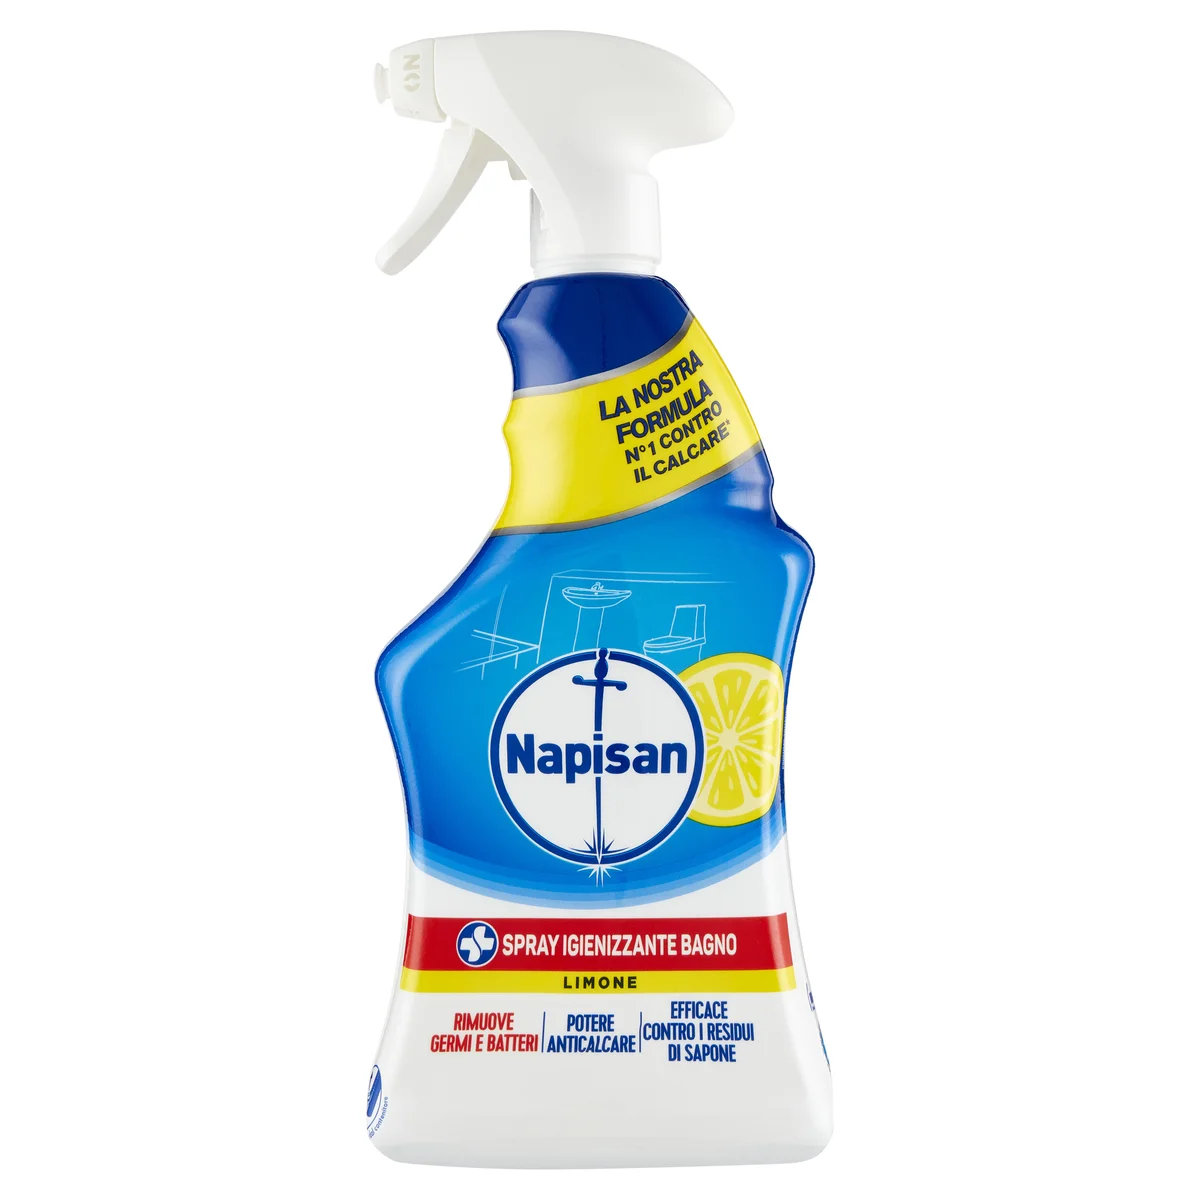 Napisan Extra Protection Spray Igienizzante Bagno Limone e Menta 750 ml